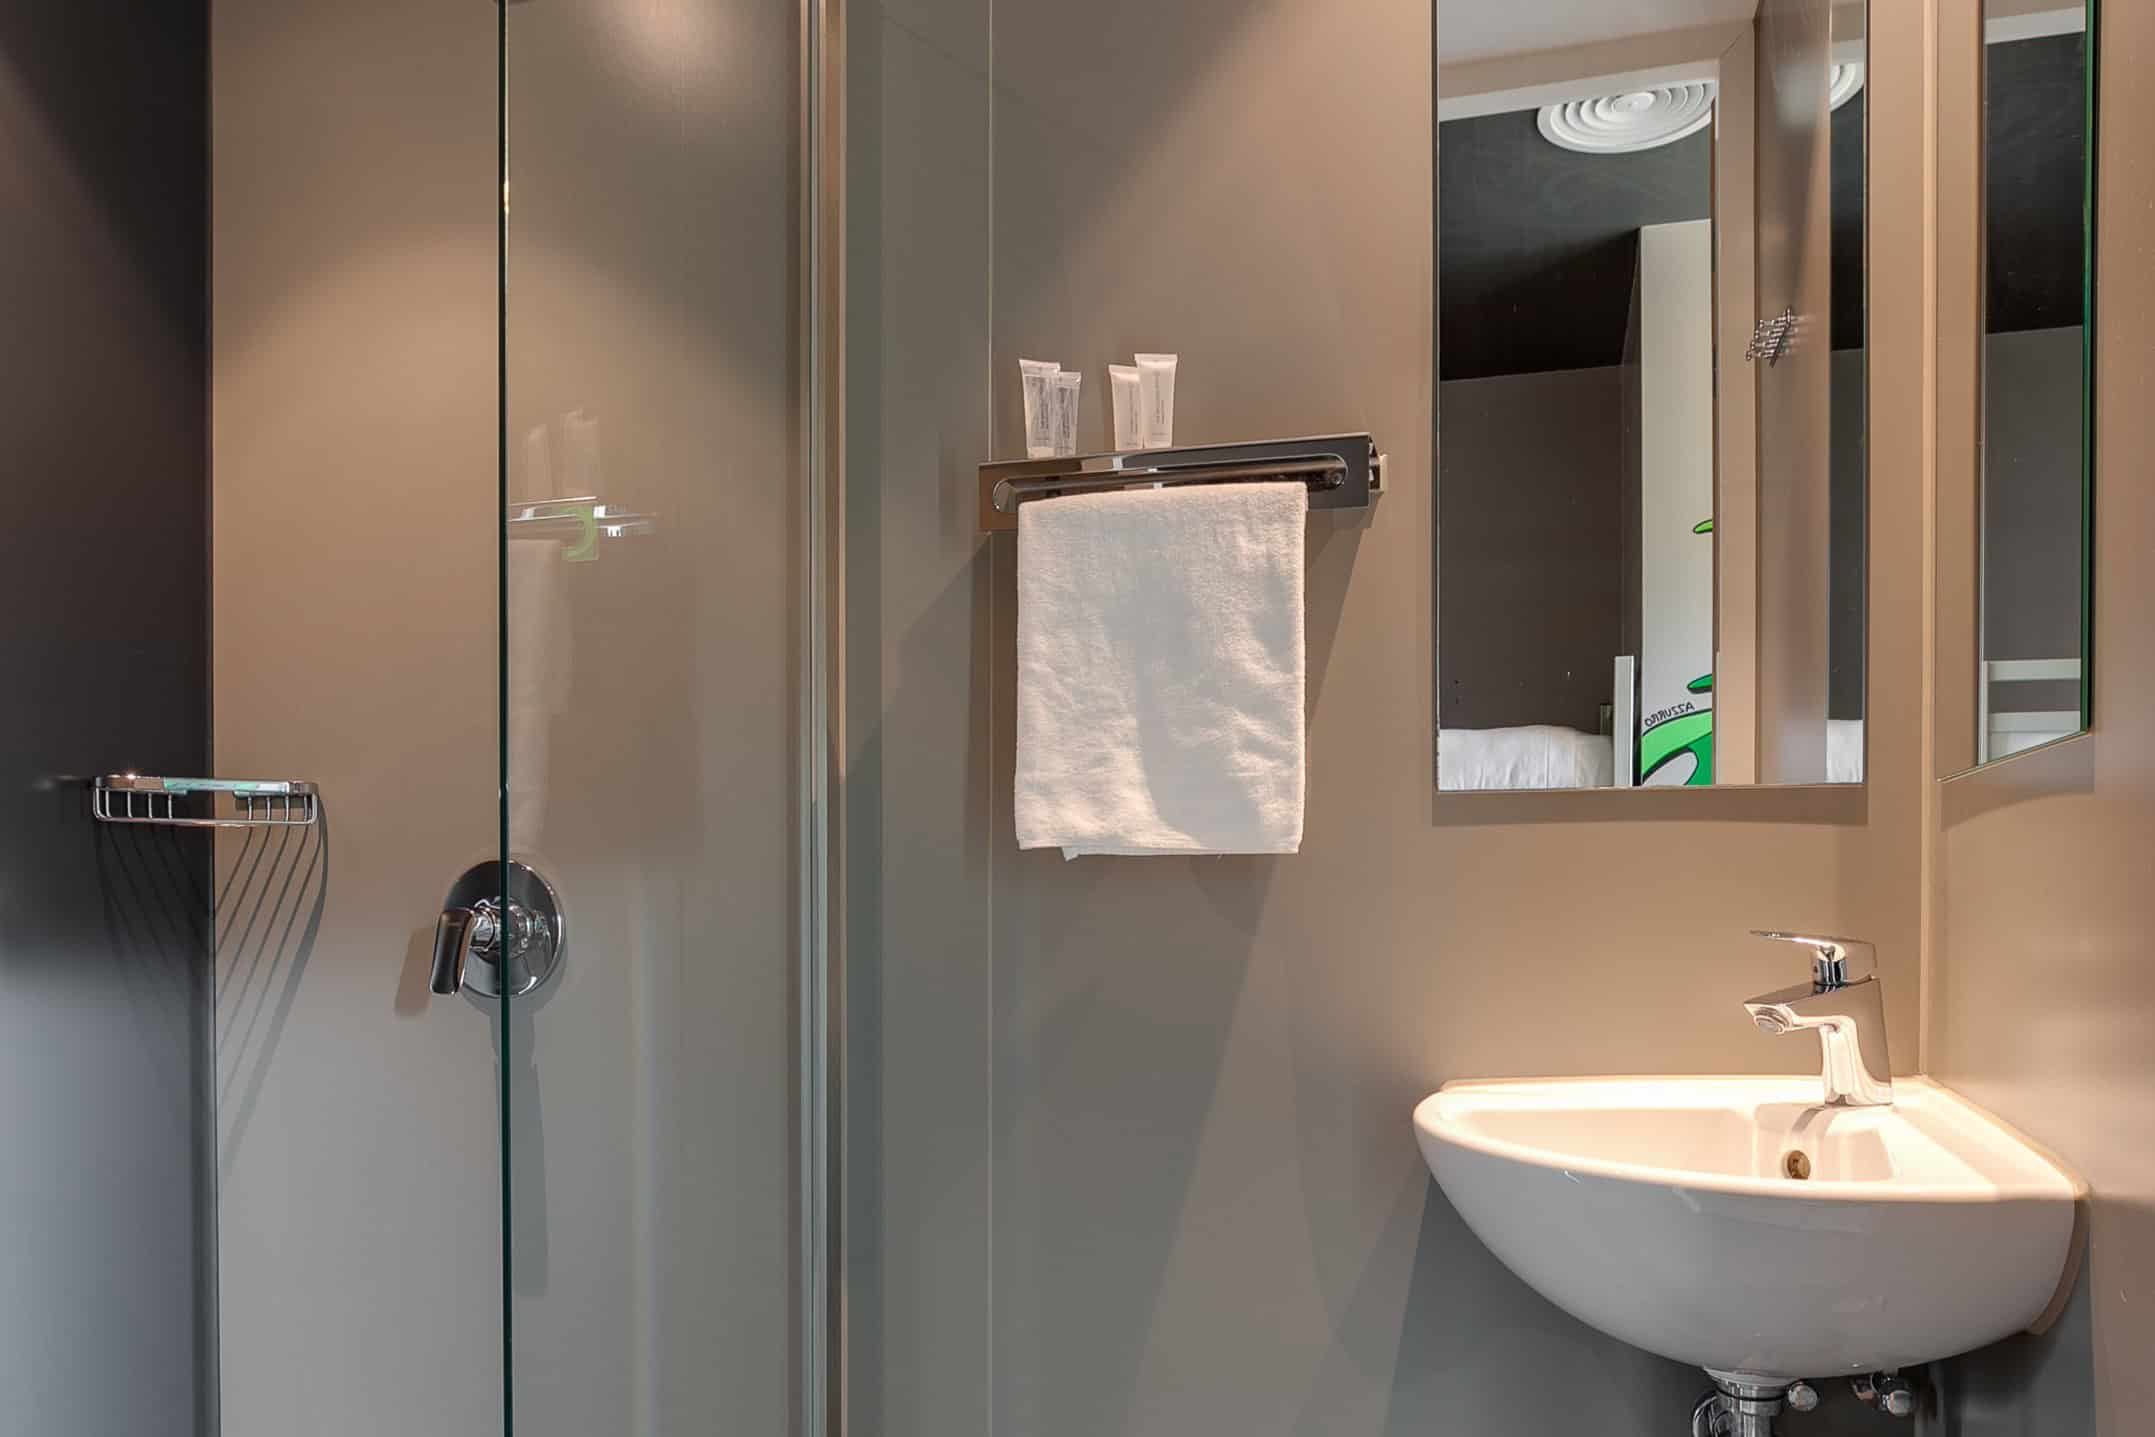 Camera privata con bagno in camera all'ostello Clinknoord di Amsterdam